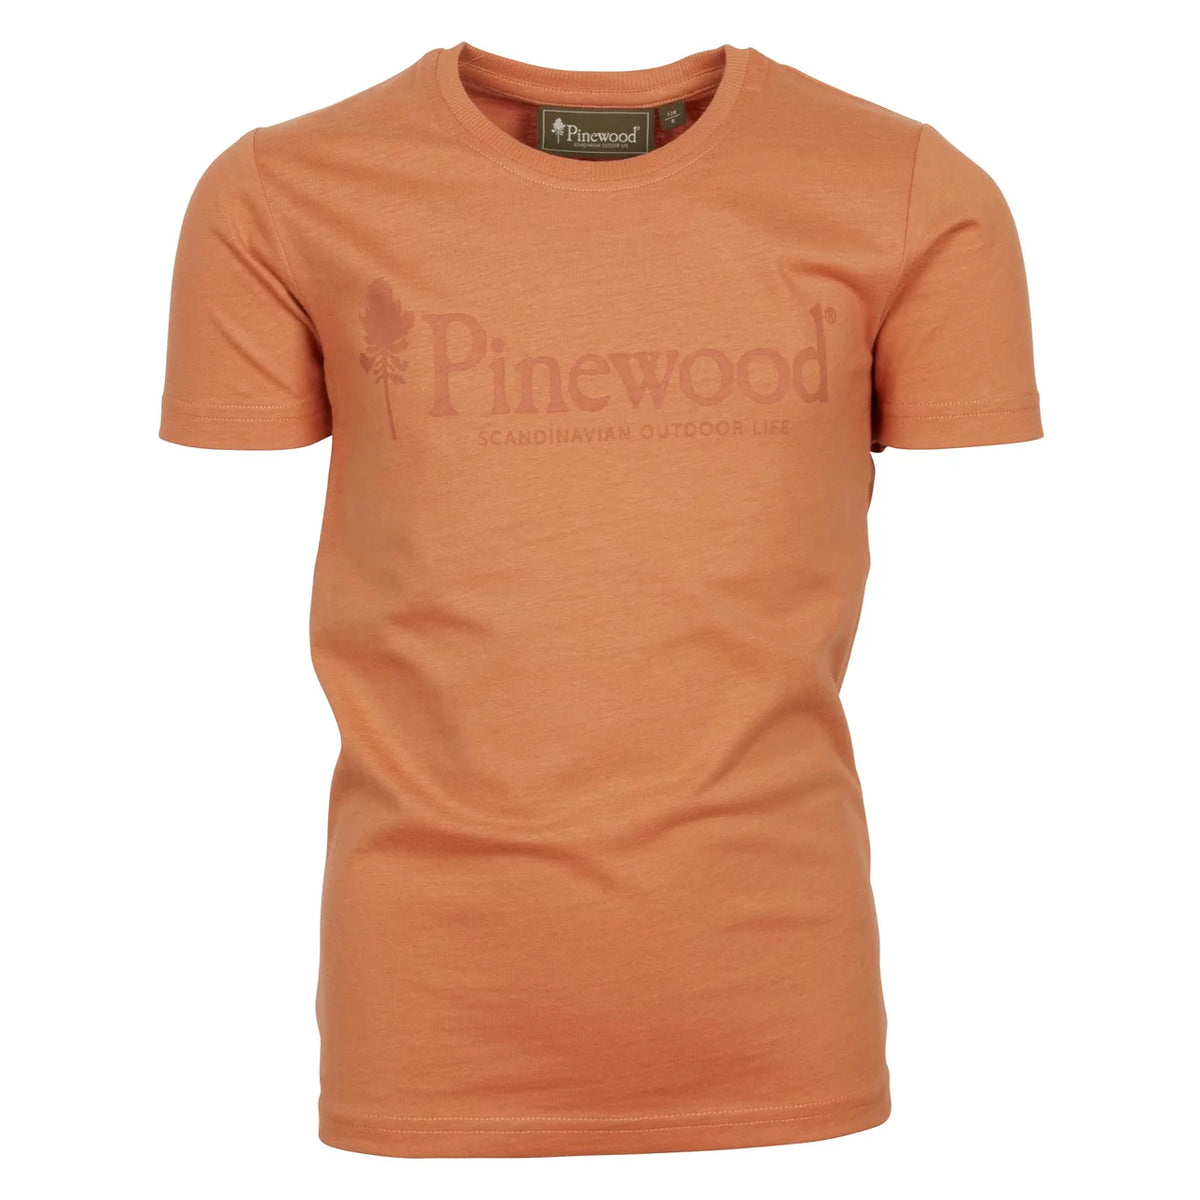 Pinewood Kinder T-Shirt Outdoor Life